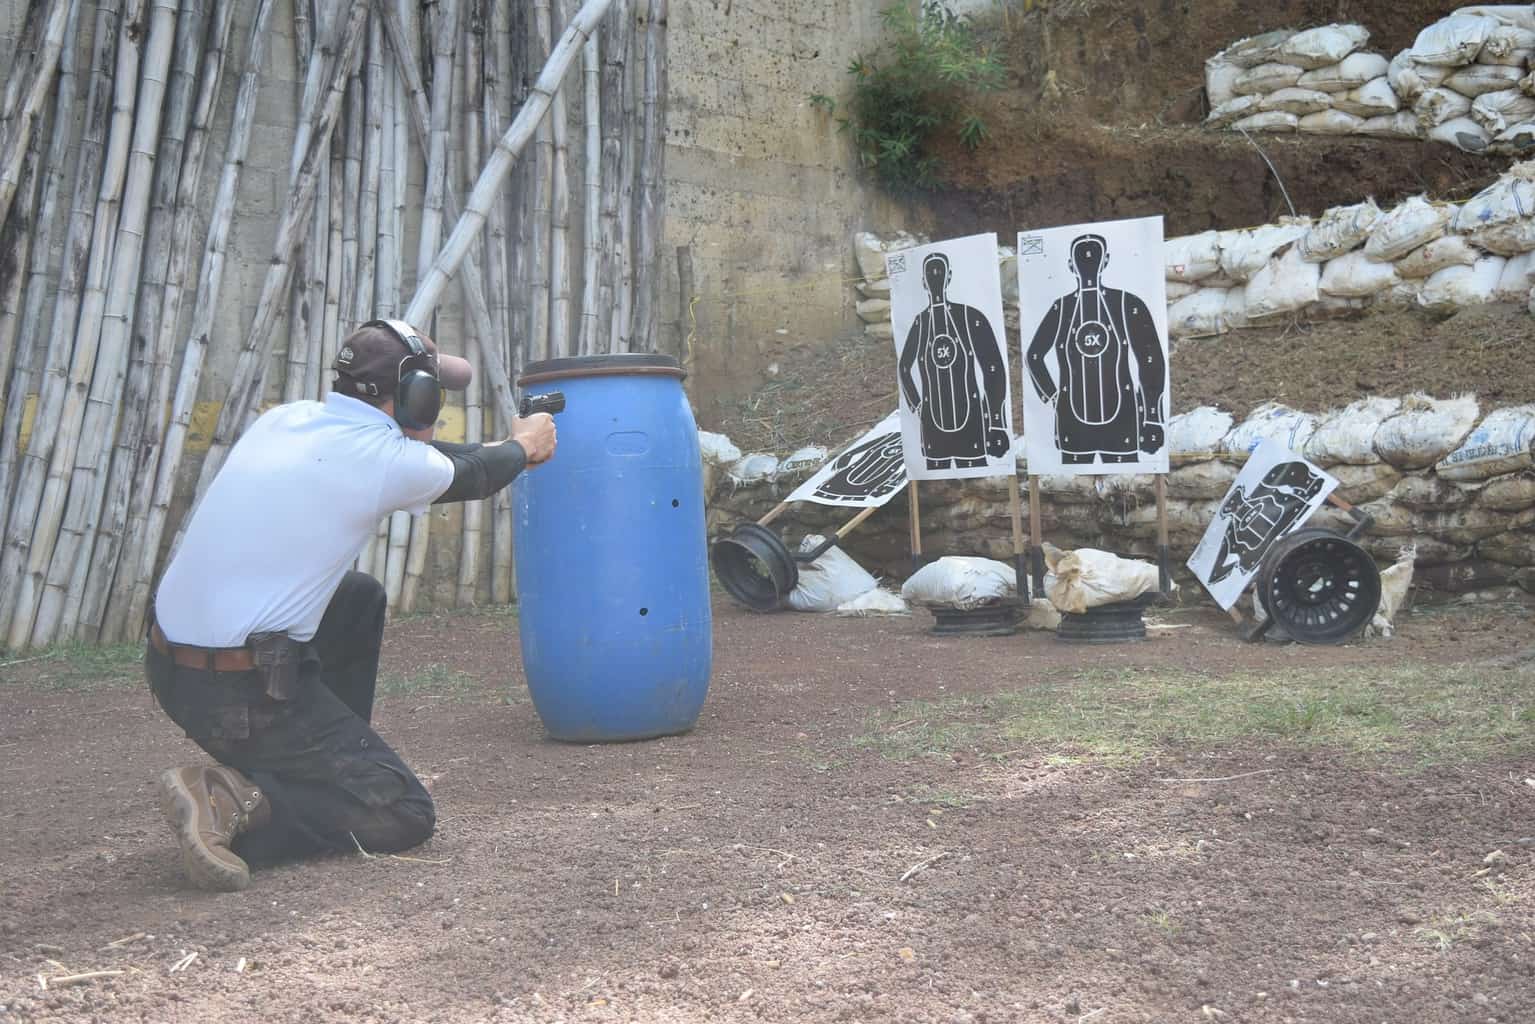 Man practicing his shooting at a gun range range in Indiana